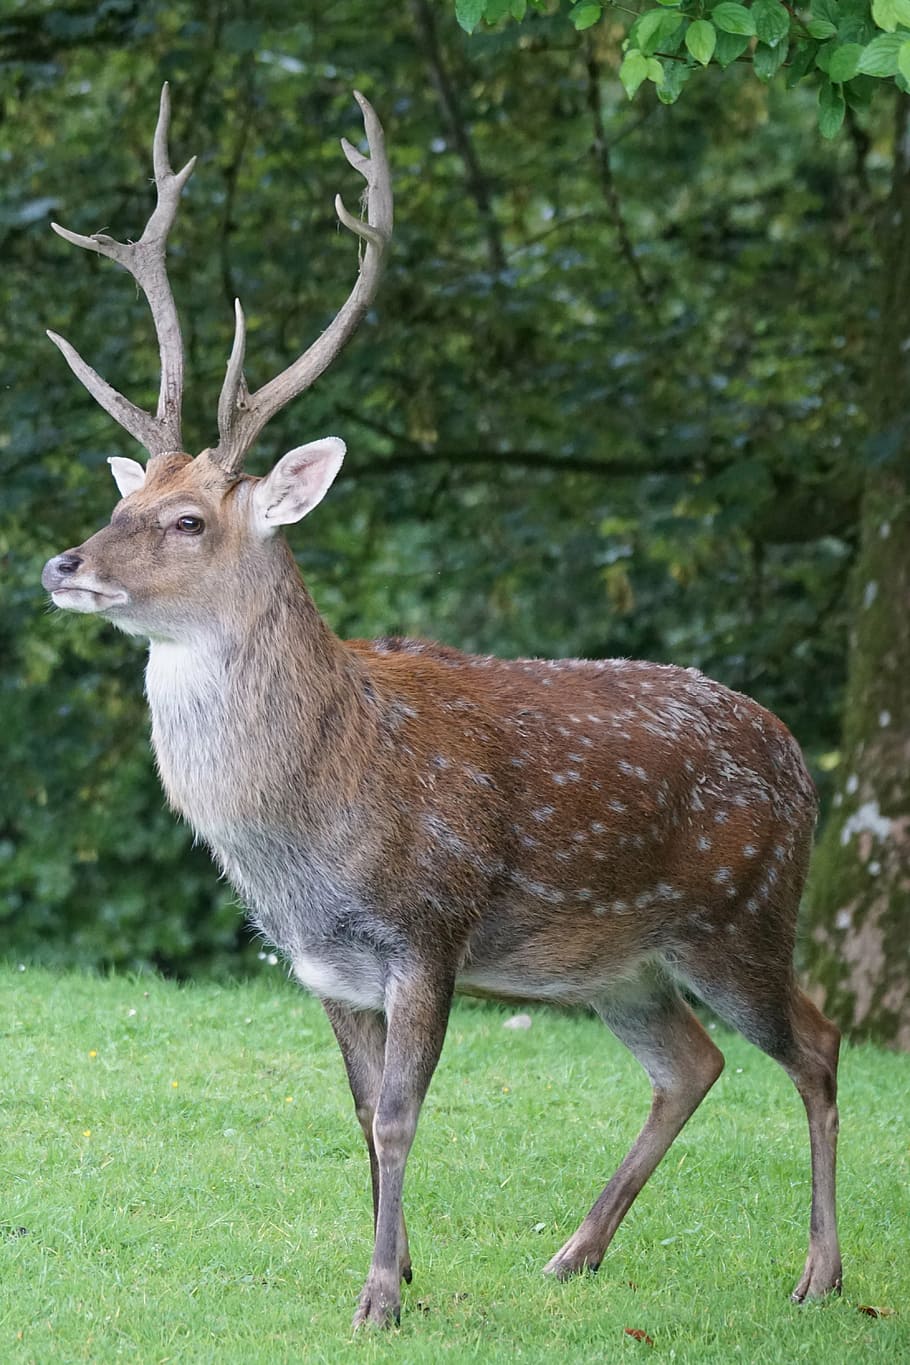 photo of brown deer standing on green grass, sika deer, hirsch